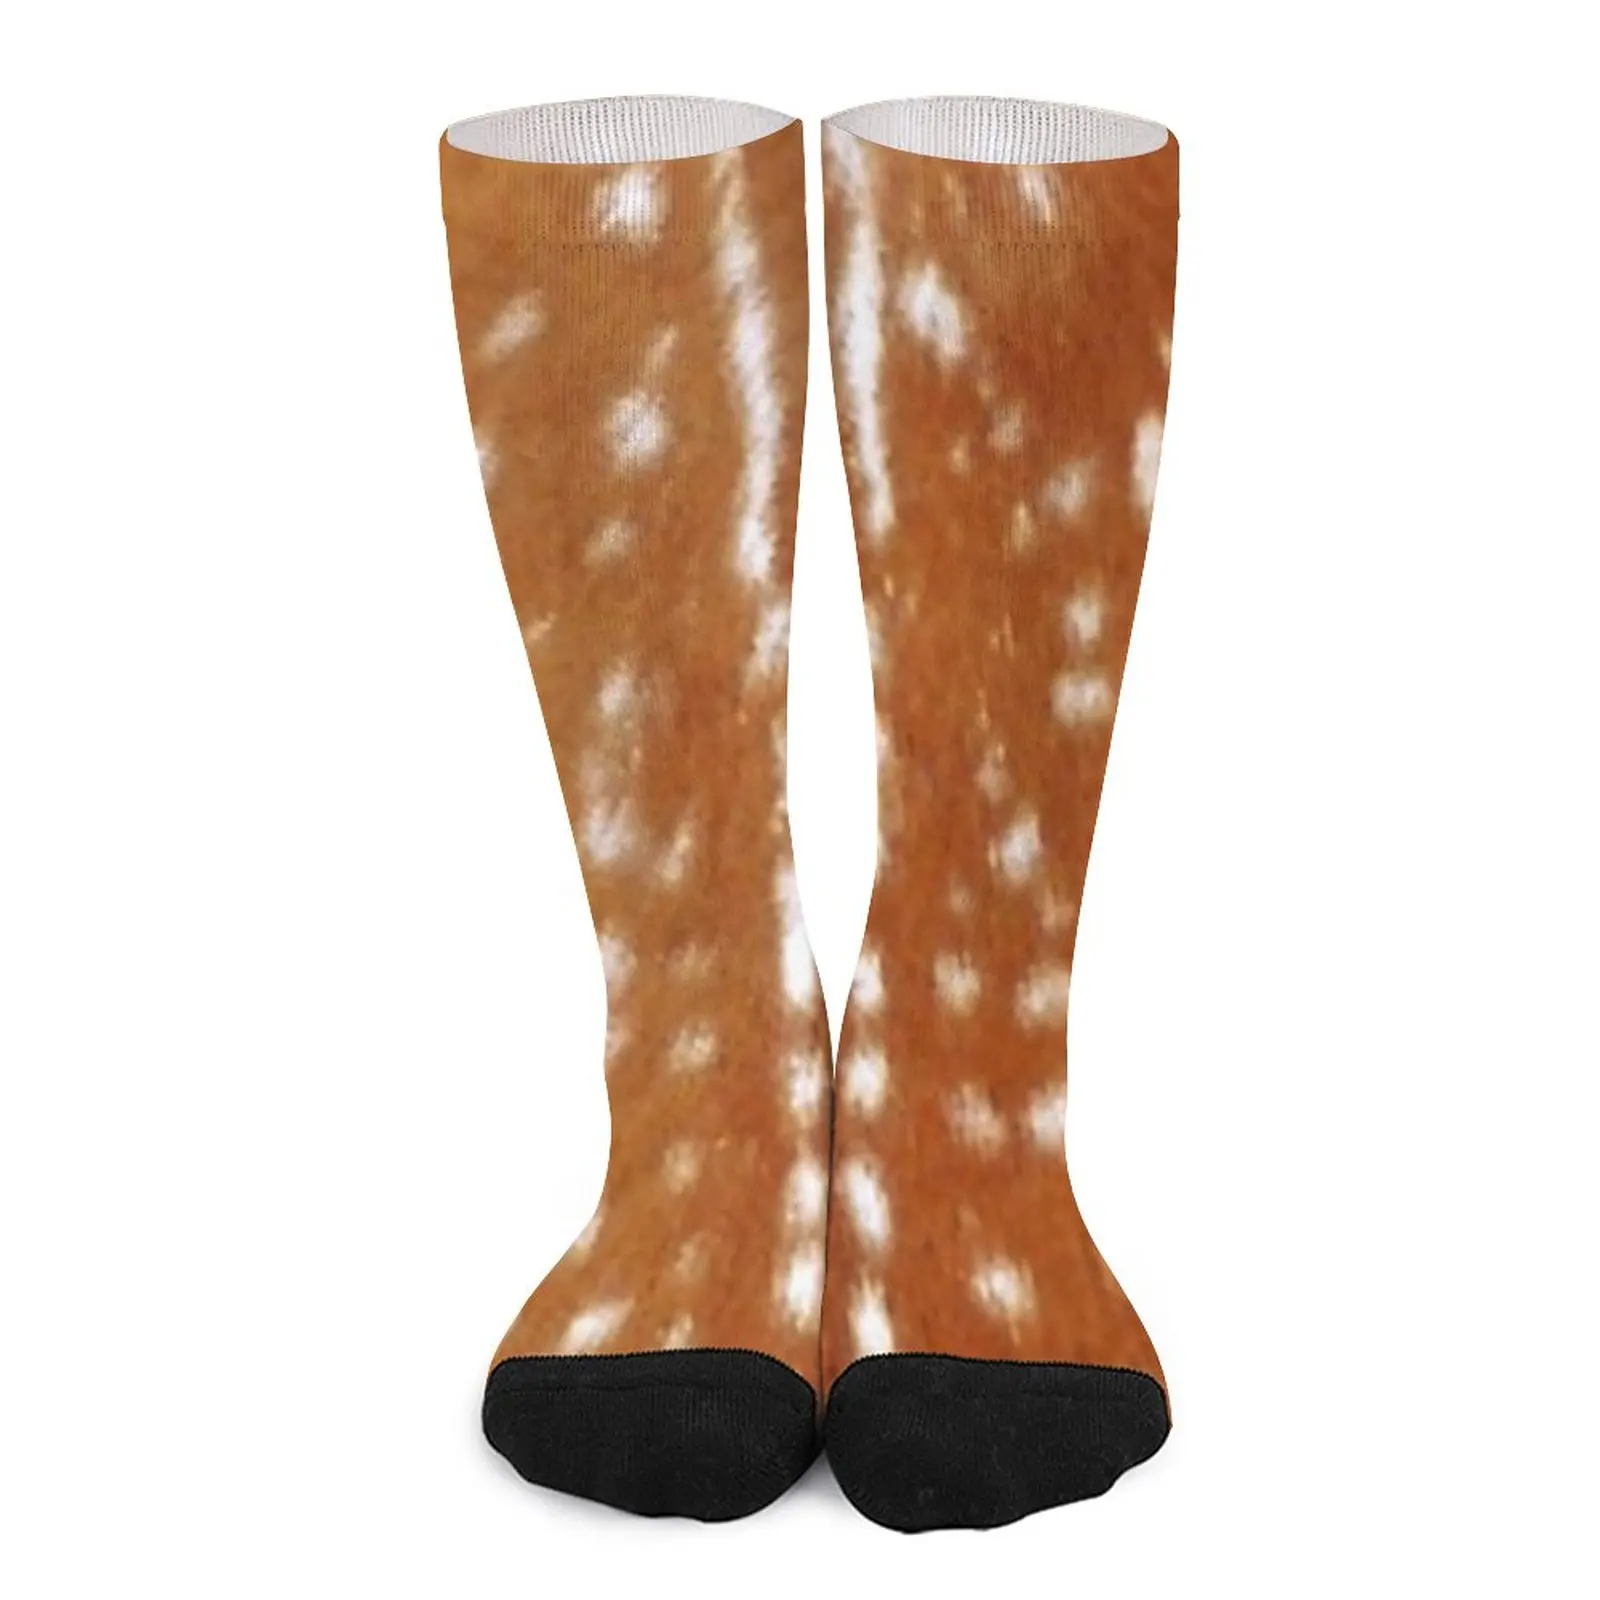 Deer hide skin brown white Socks cotton socks men socks for men Women's socks high